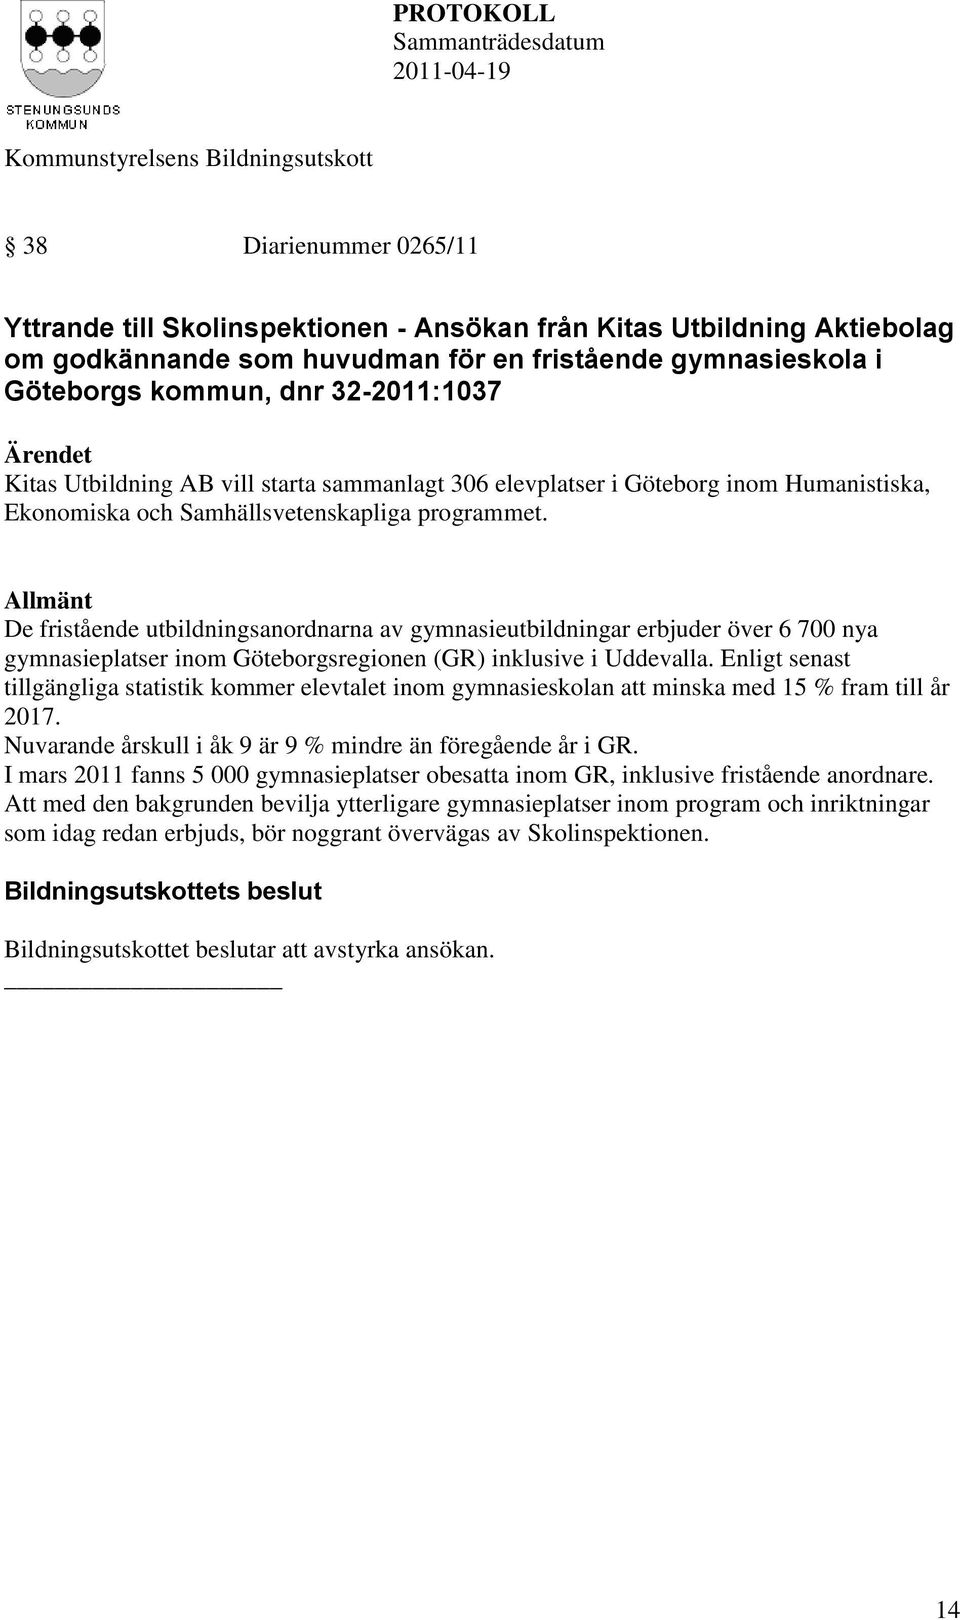 Göteborgs kommun, dnr 32-2011:1037 Kitas Utbildning AB vill starta sammanlagt 306